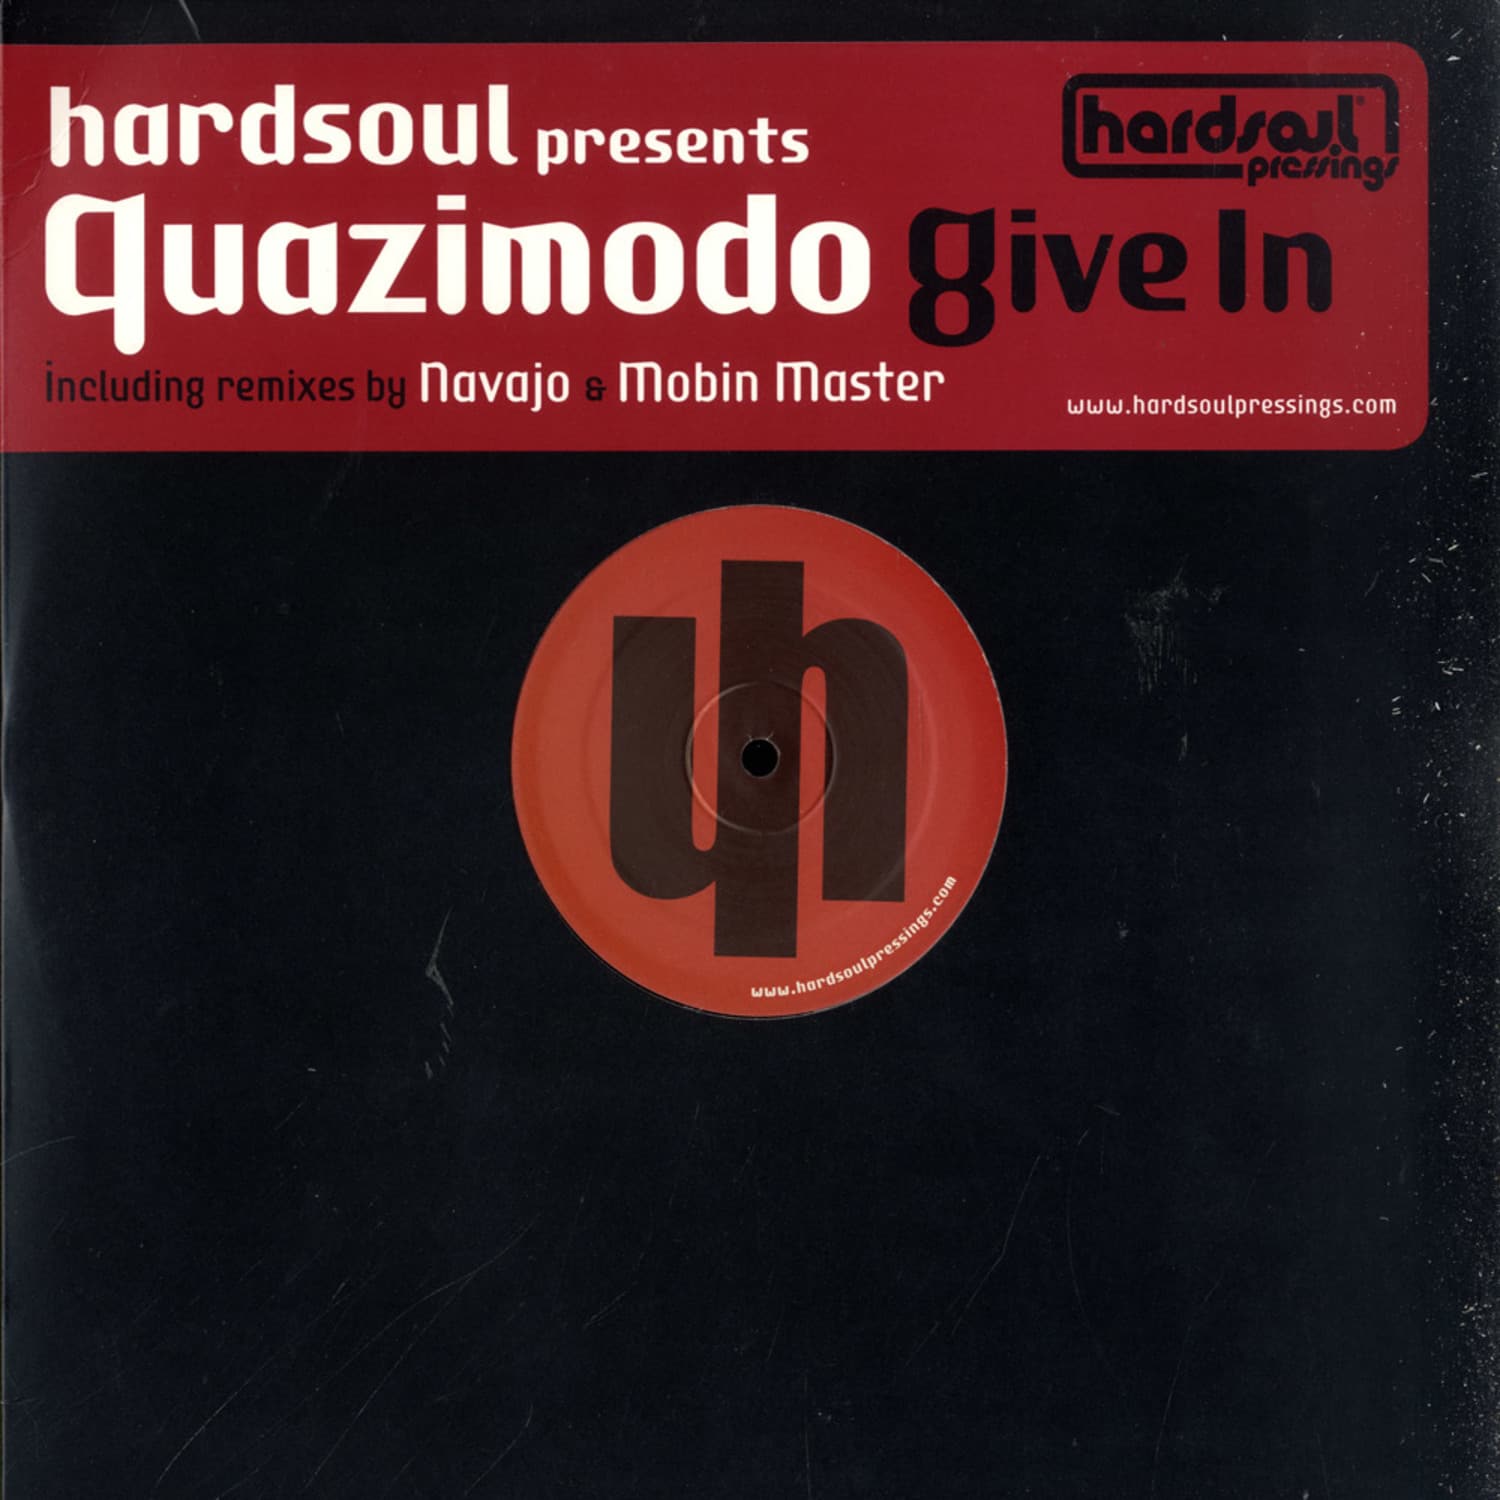 Quazimodo - GIVE IN